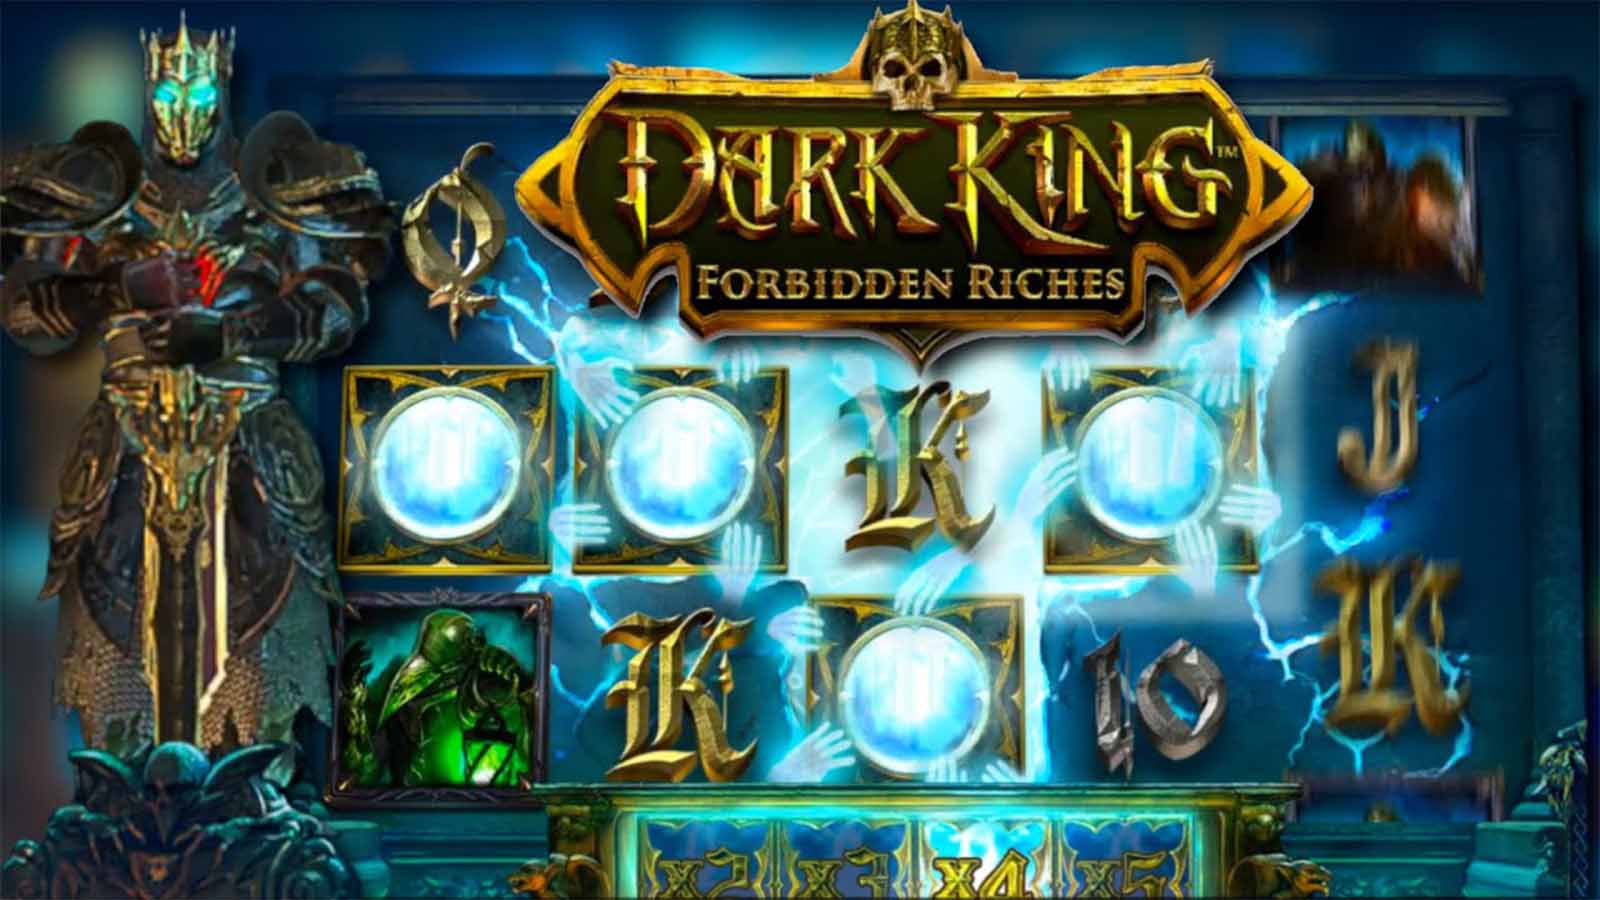 Dark King Forbidden Riches - 96.06% RTP